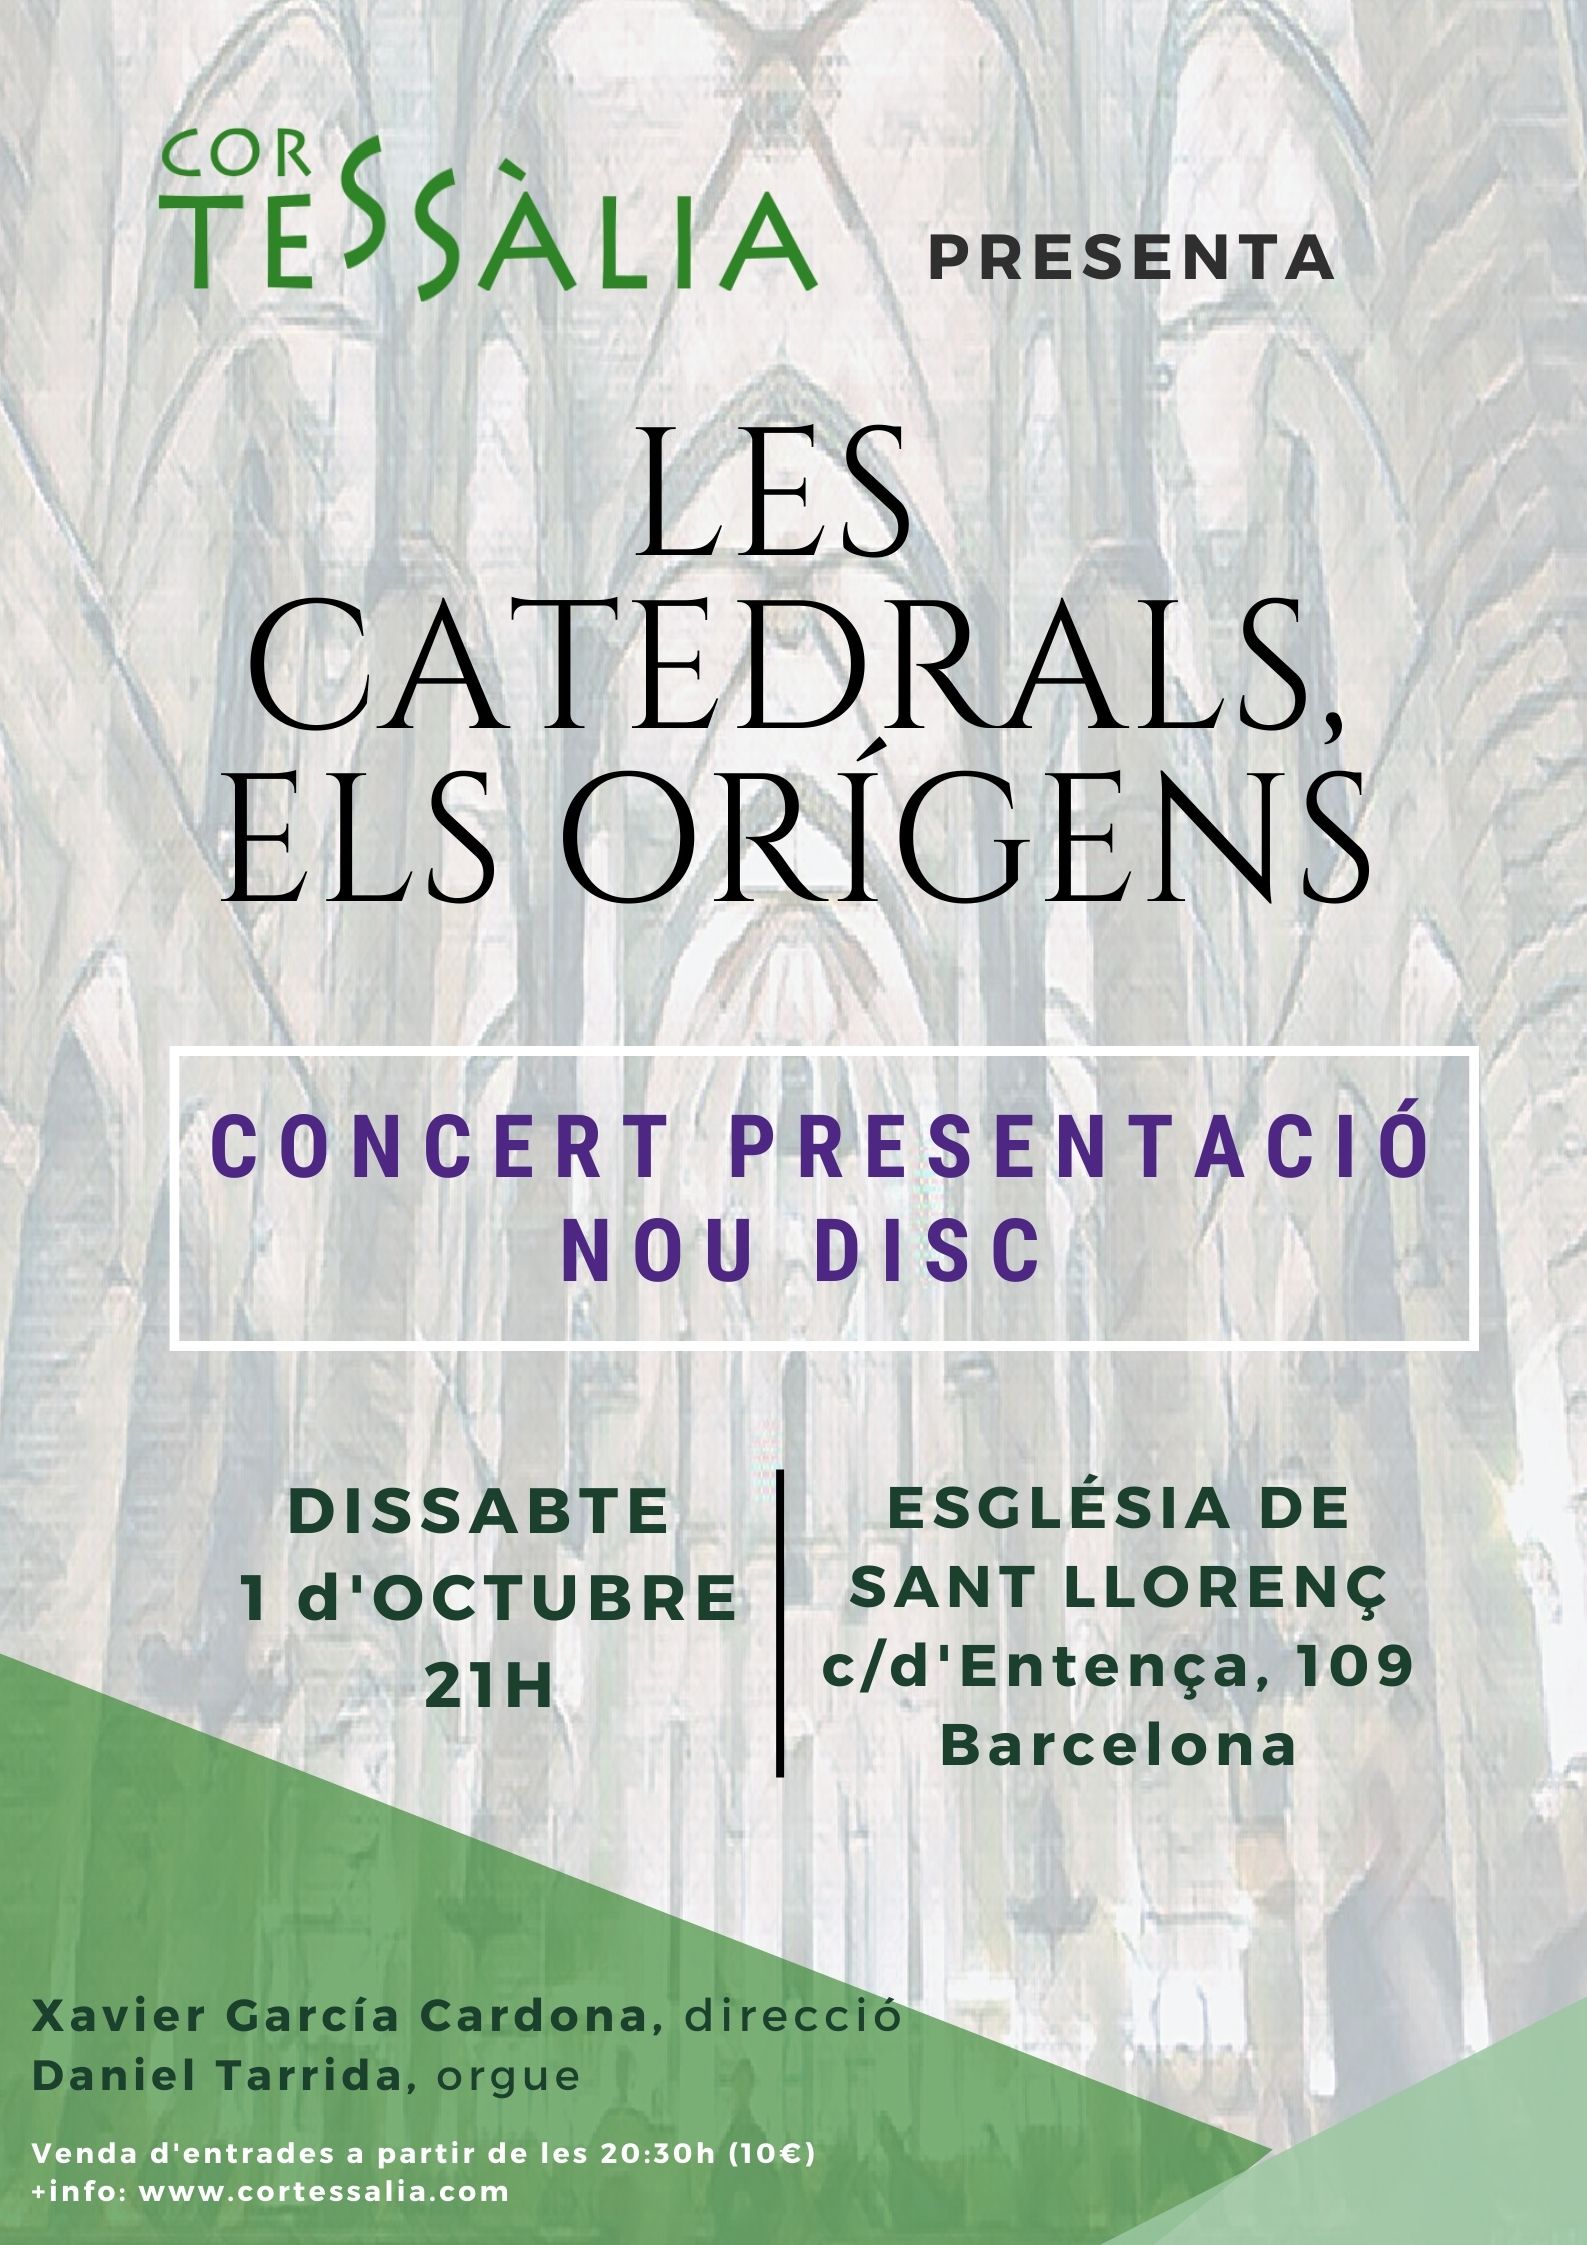 Concert Presentació nou disc: Les Catedrals, els orígens